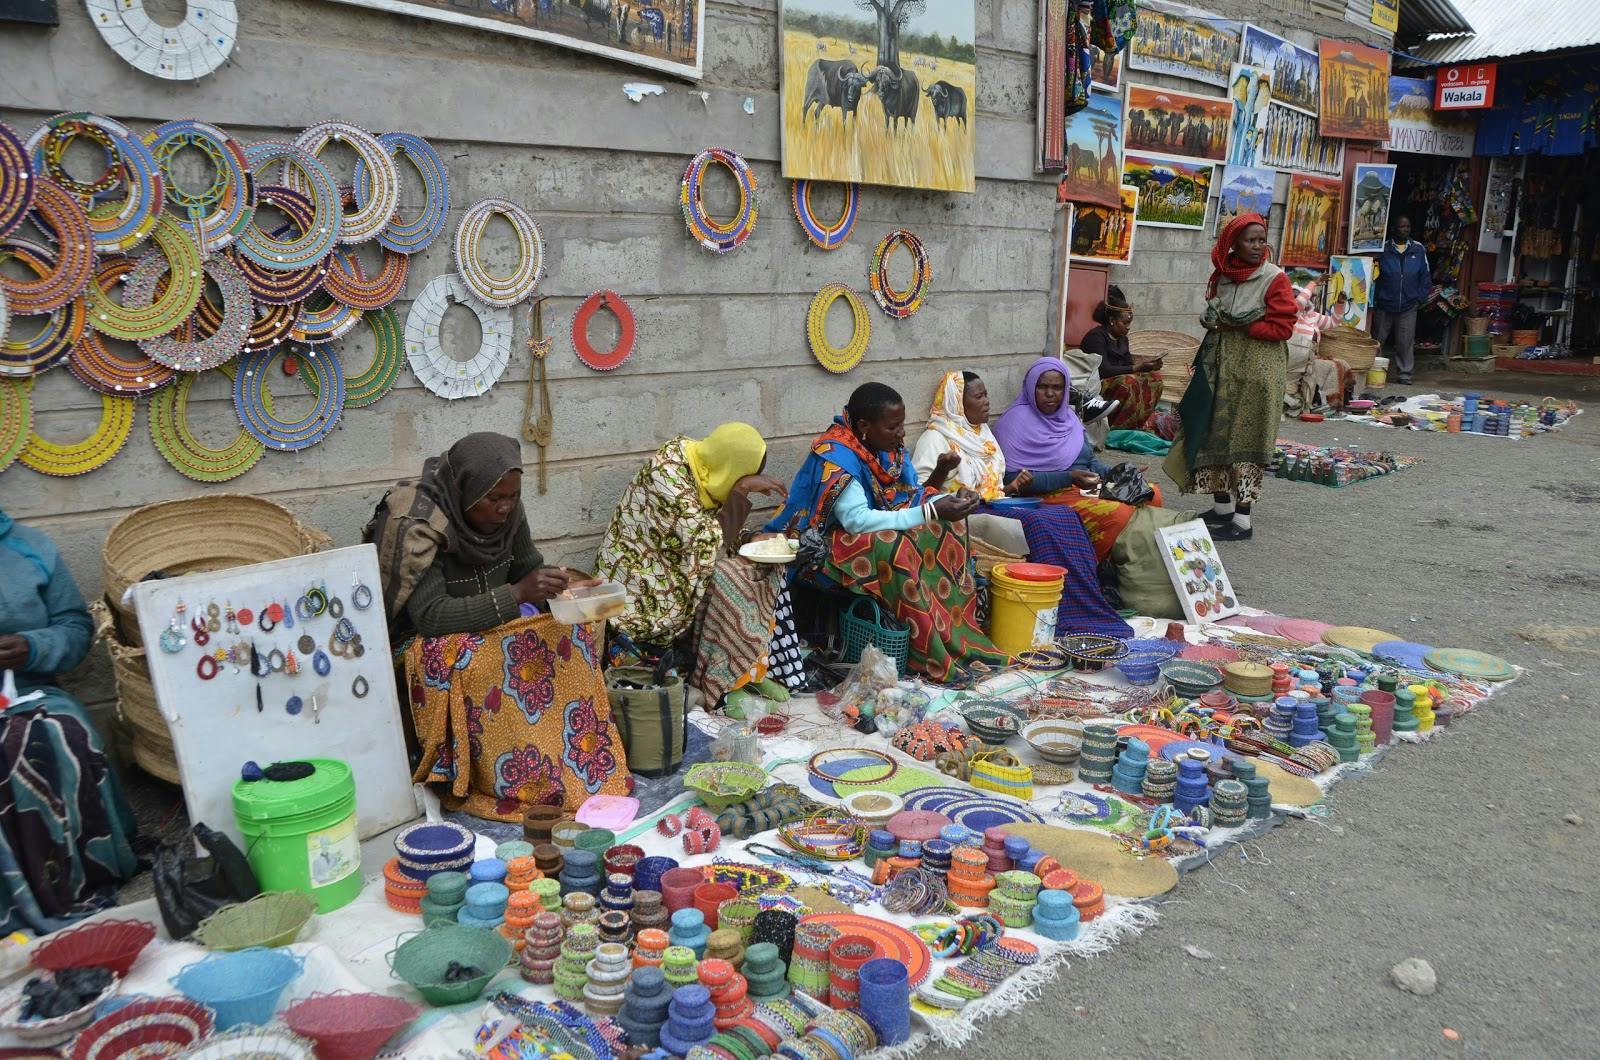 Image - Maasai Market Curios and Crafts